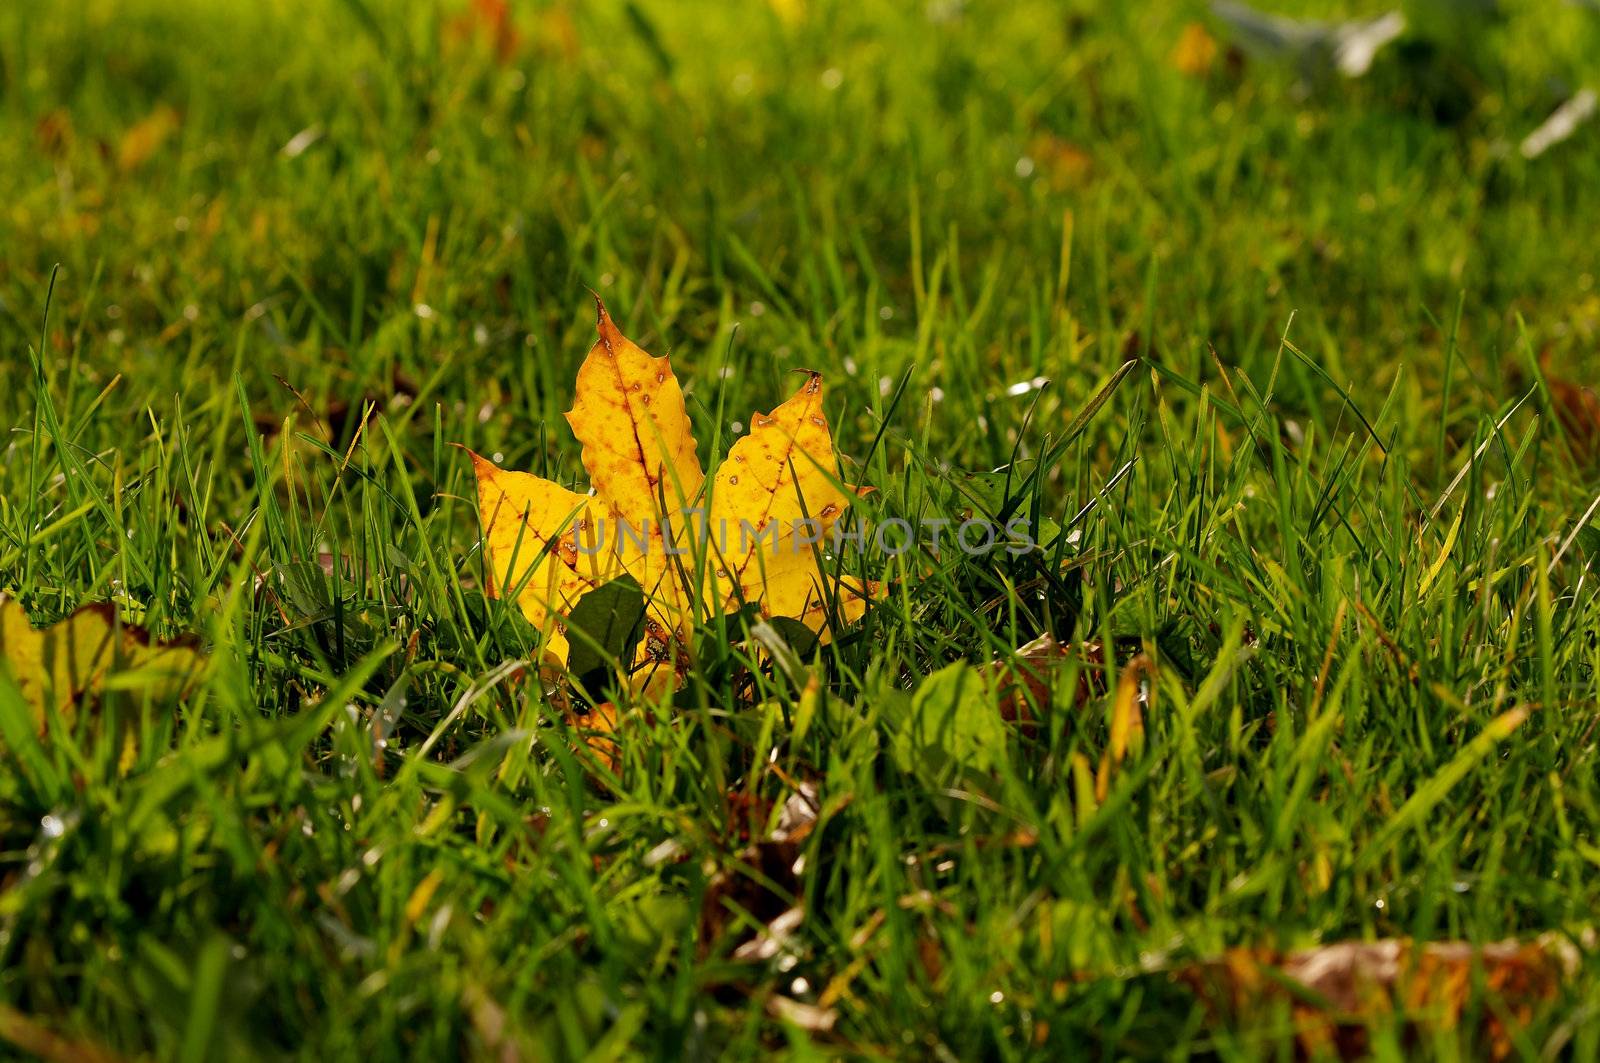 Maple Leaf in Green Grass by zhekos